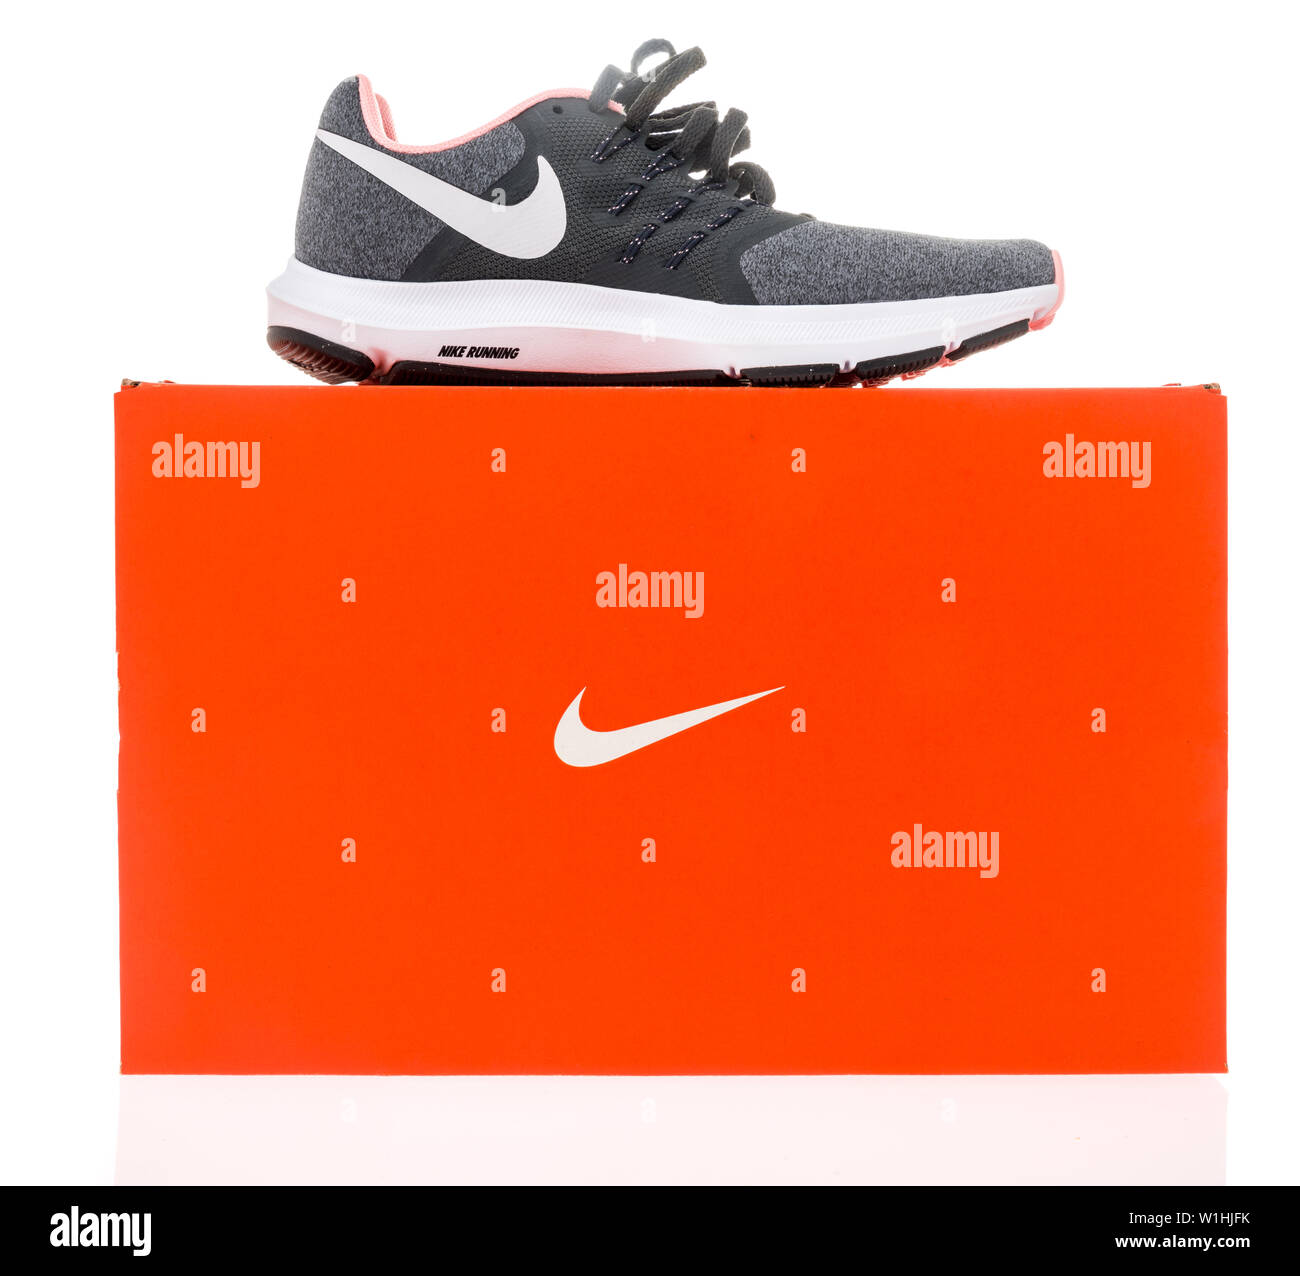 Winneconne, WI - 29 Mai 2019: Ein Nike Swift Run Schuh saß oben auf der  einen Nike Schuhkarton auf einem isolierten Hintergrund Stockfotografie -  Alamy